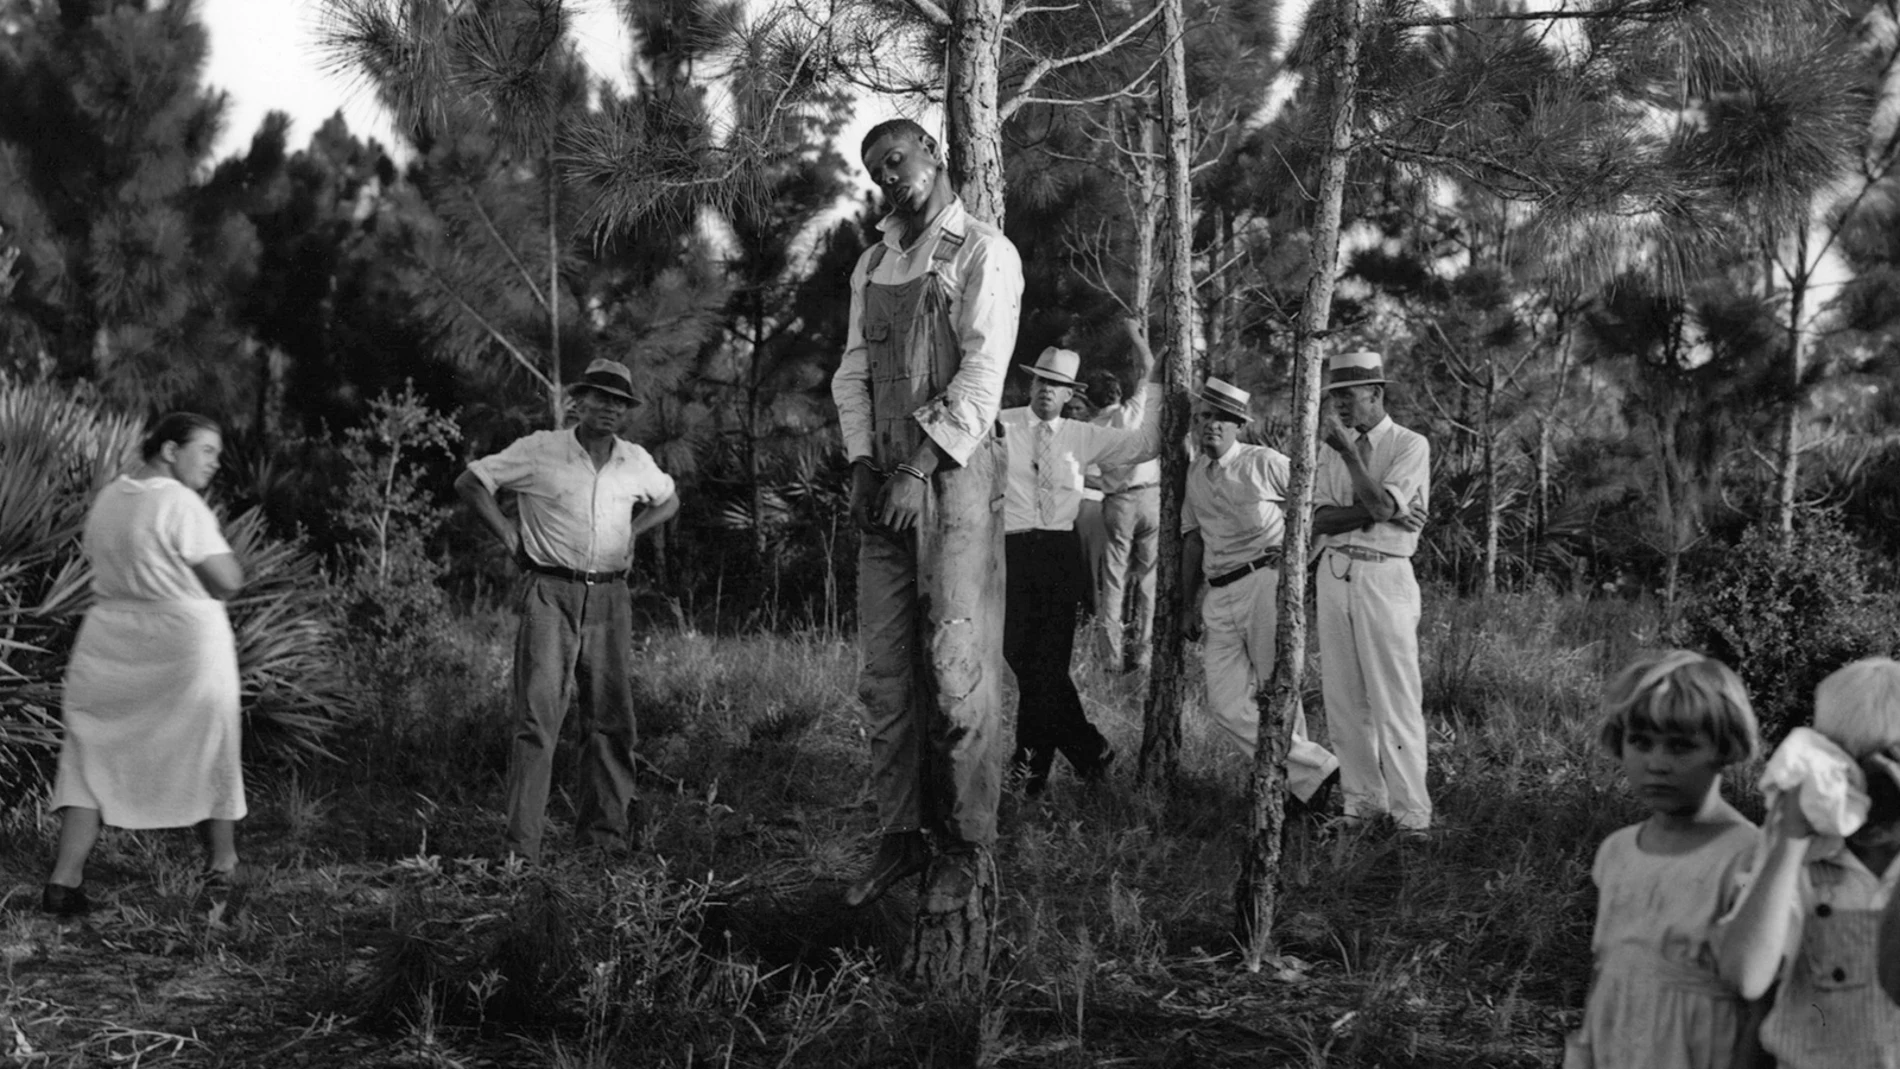 El cadáver de Rubin Stacy cuelga de un árbol en Fort Lauderdale en 1935 mientras sus vecinos contemplan su cuerpo